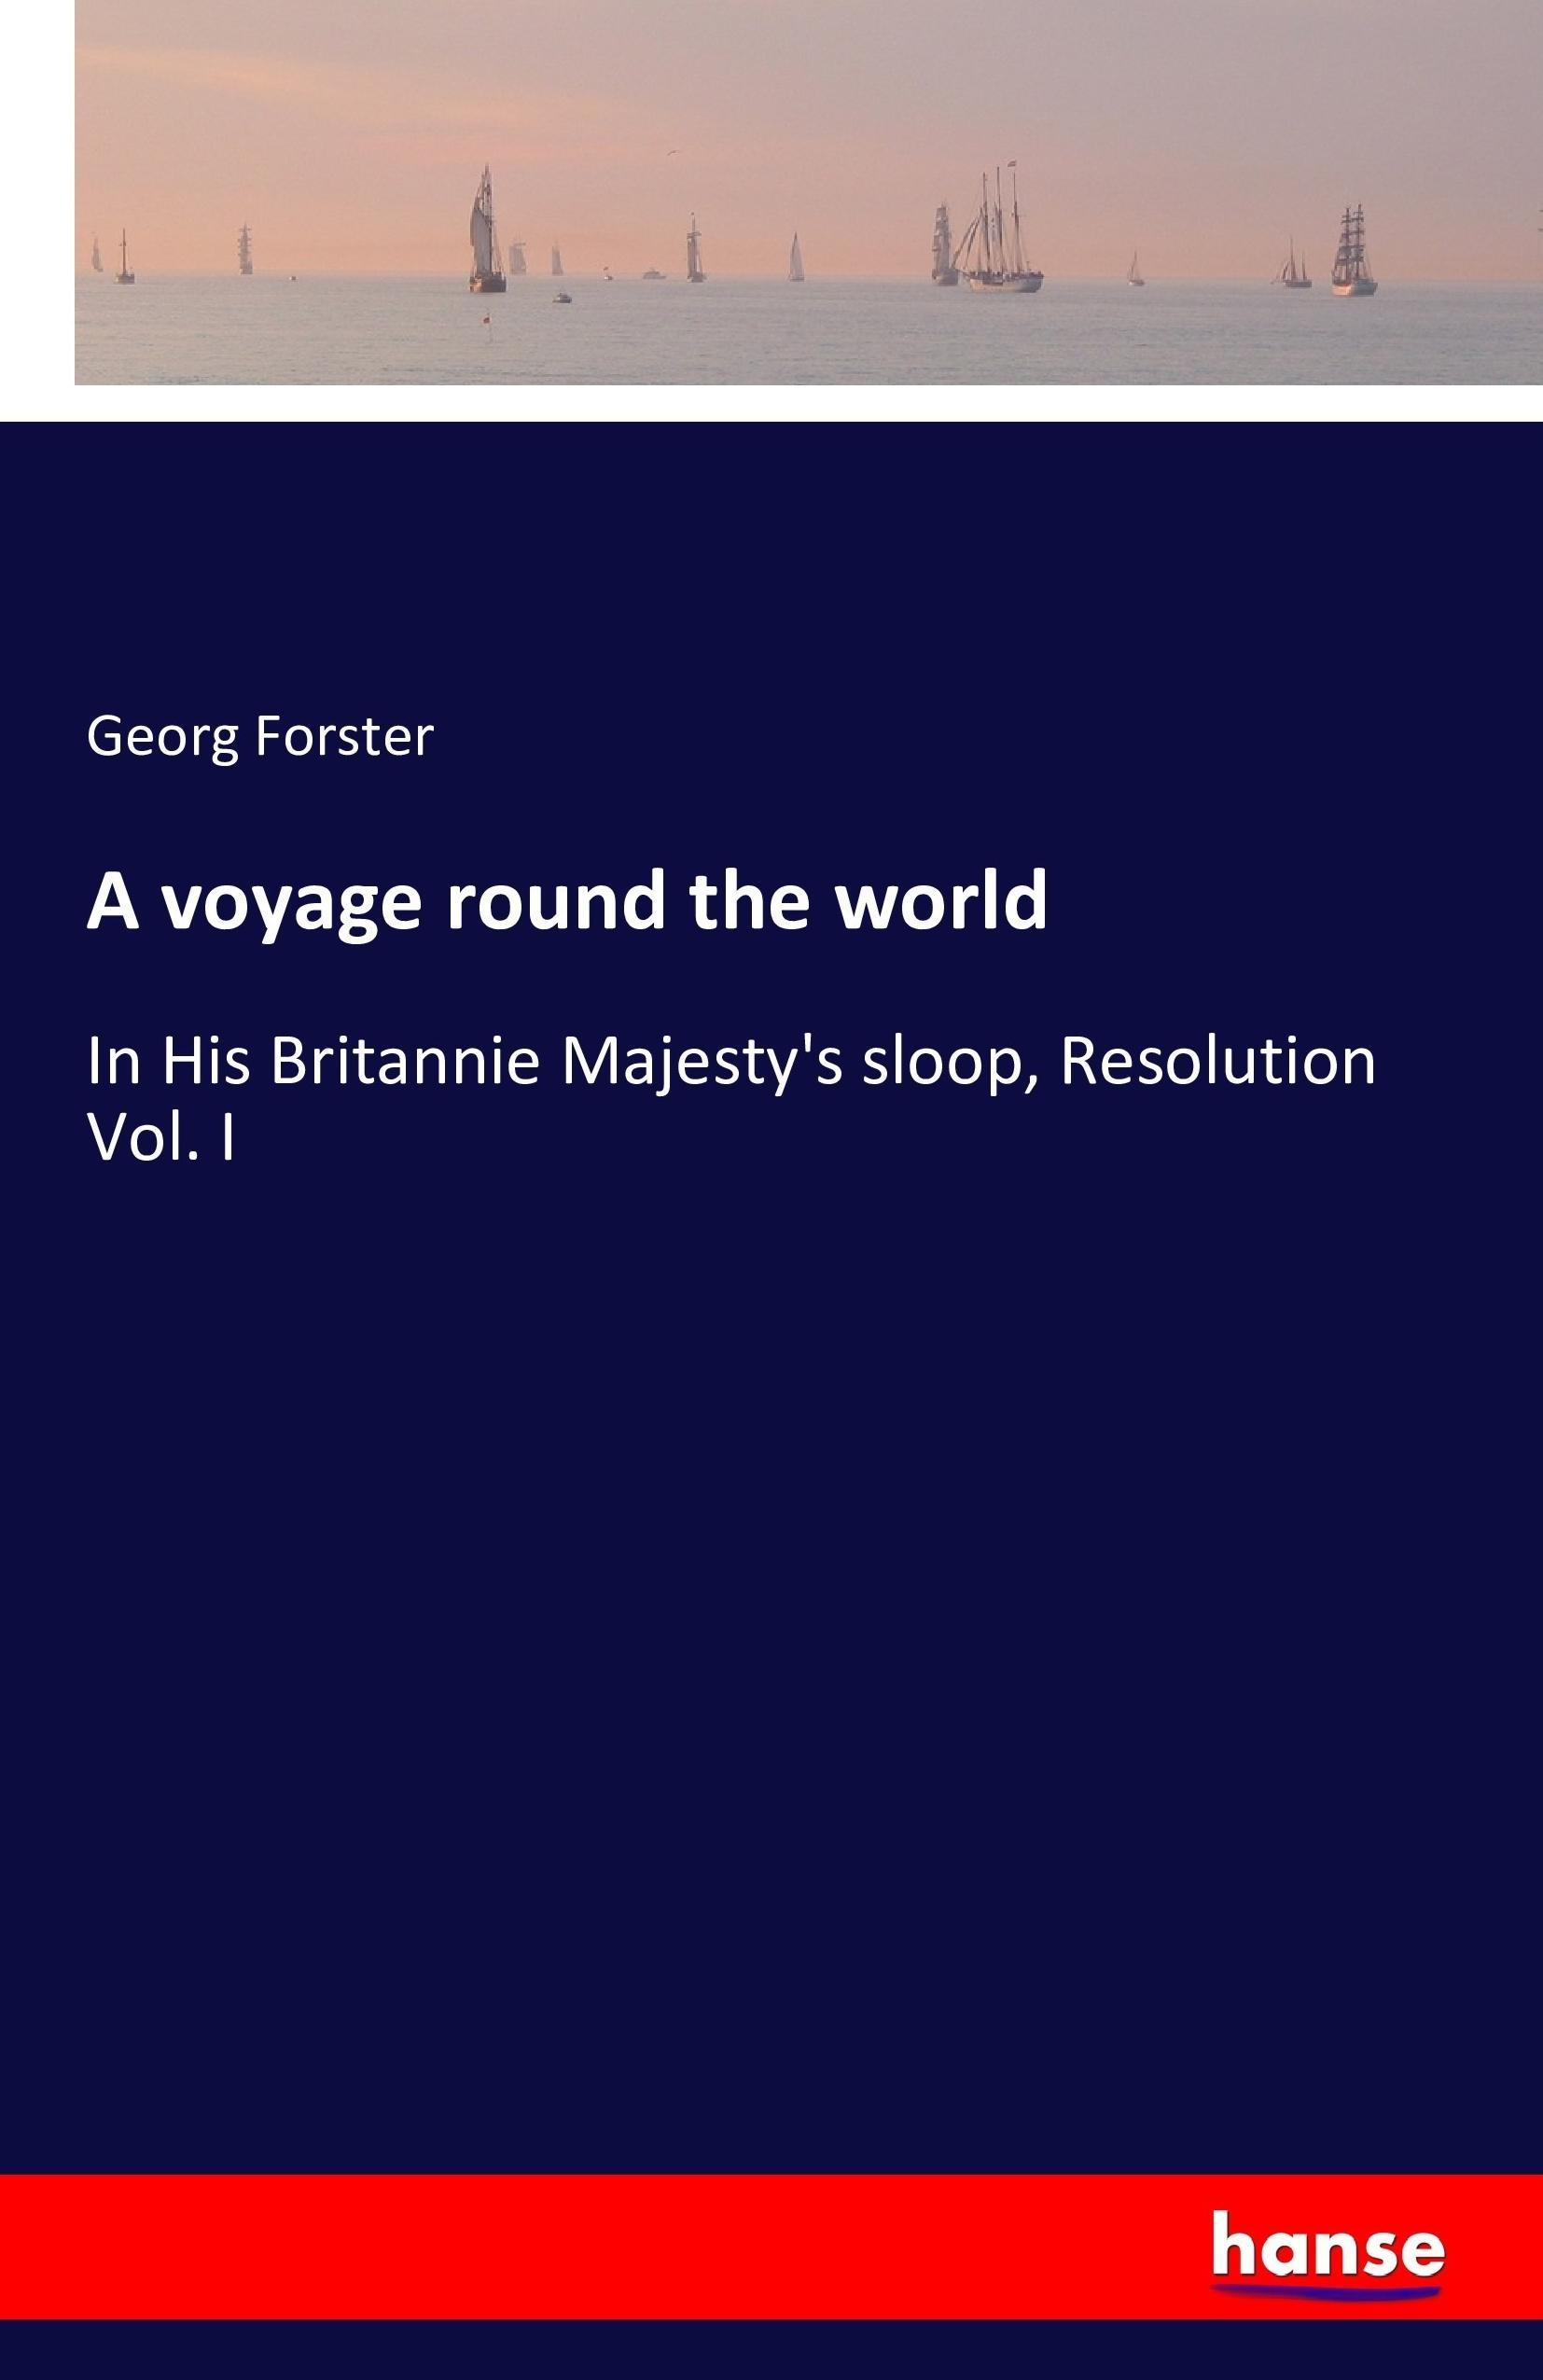 A voyage round the world / In His Britannie Majesty's sloop, Resolution Vol. I / Georg Forster / Taschenbuch / Paperback / 628 S. / Englisch / 2016 / hansebooks / EAN 9783741194795 - Forster, Georg